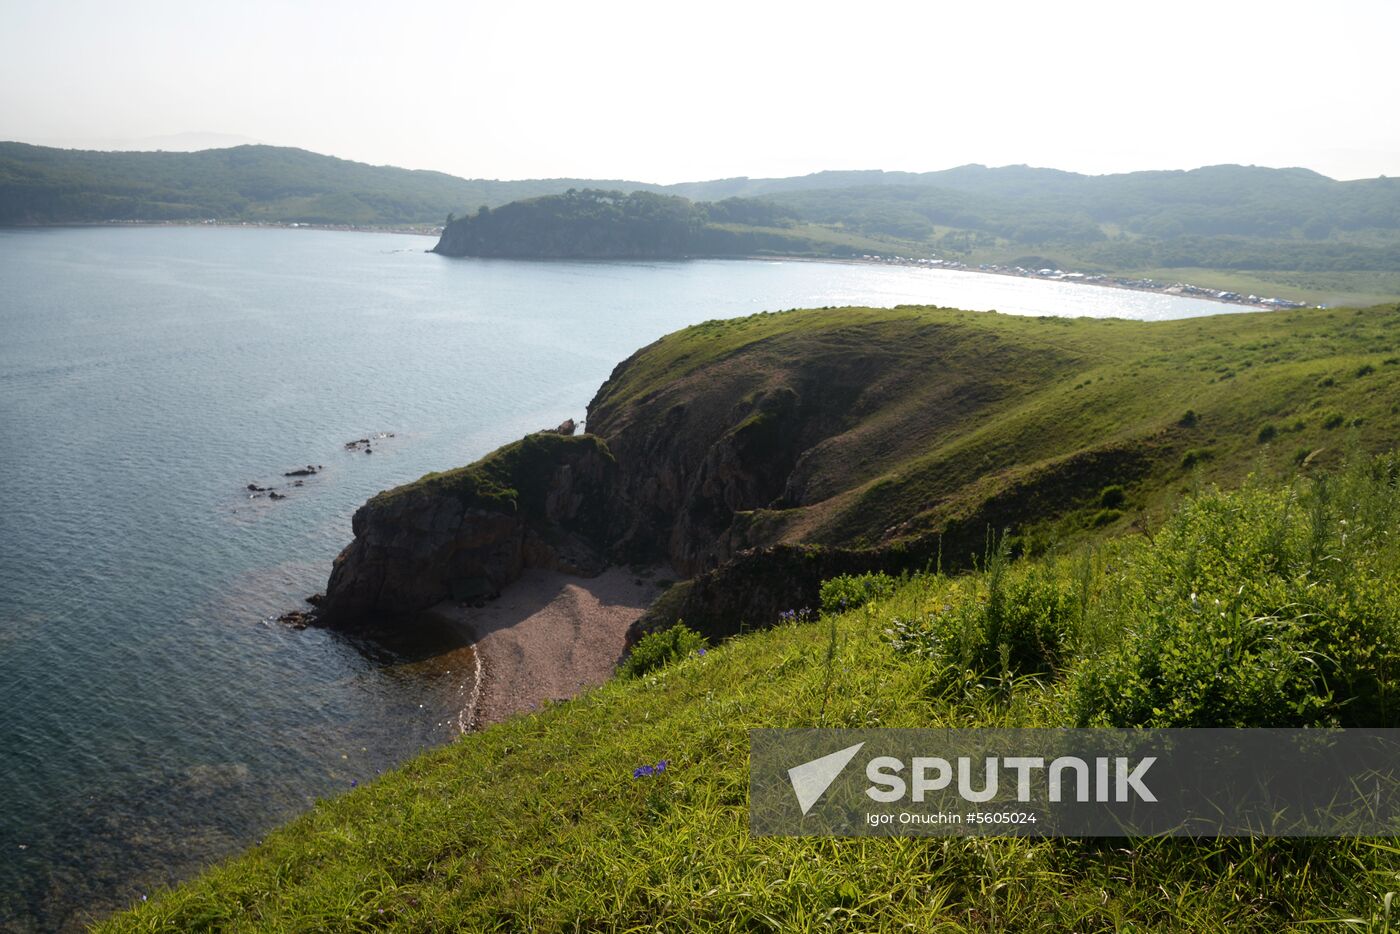 Putyatin Island in Primorye Territory